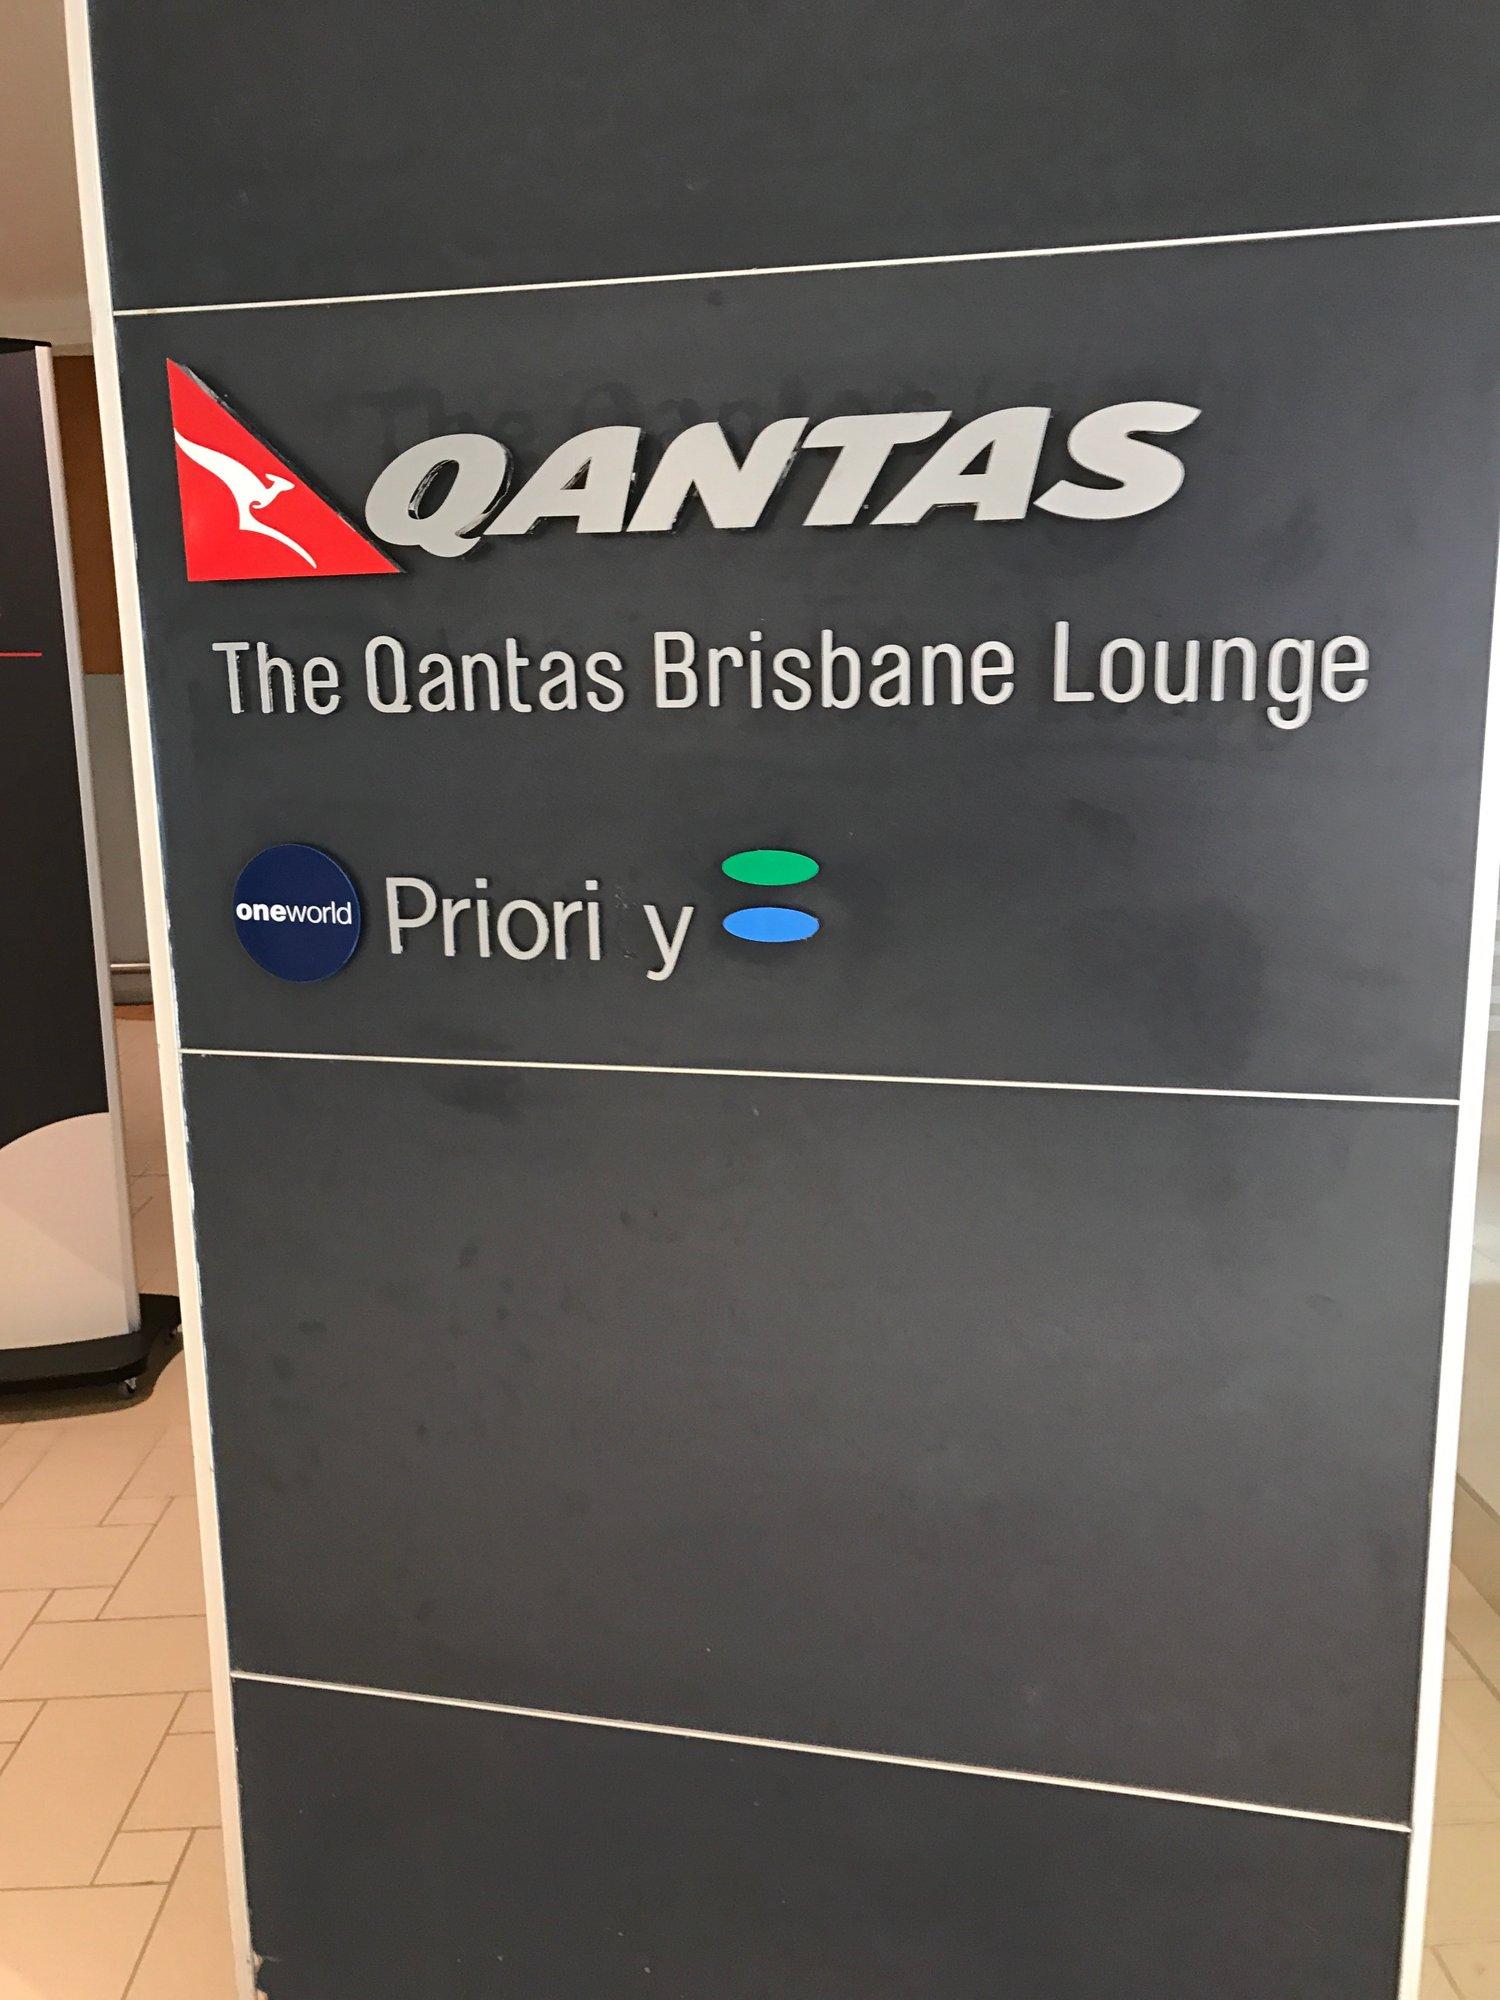 Qantas Brisbane International Lounge image 2 of 5